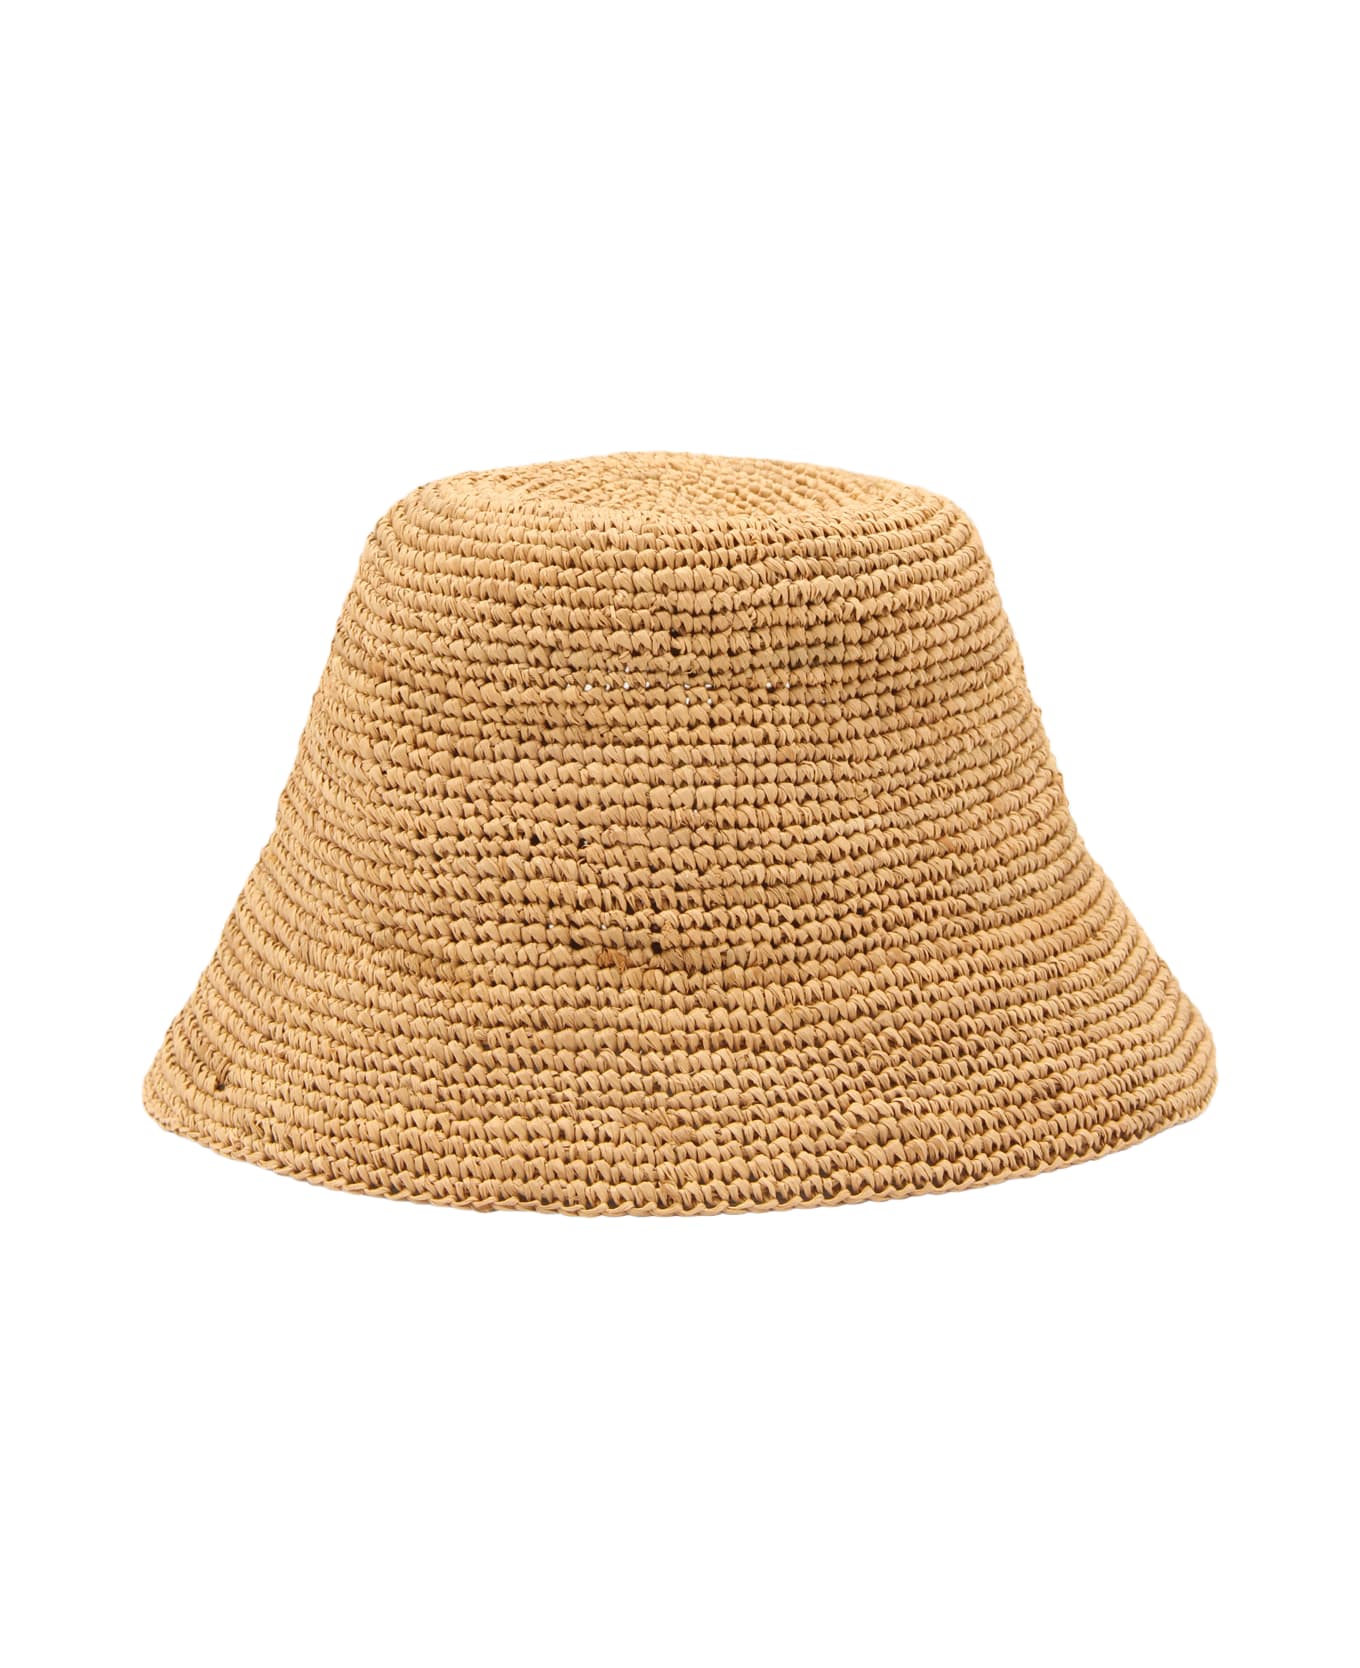 Ibeliv Natural Raffia Andao Hat 帽子